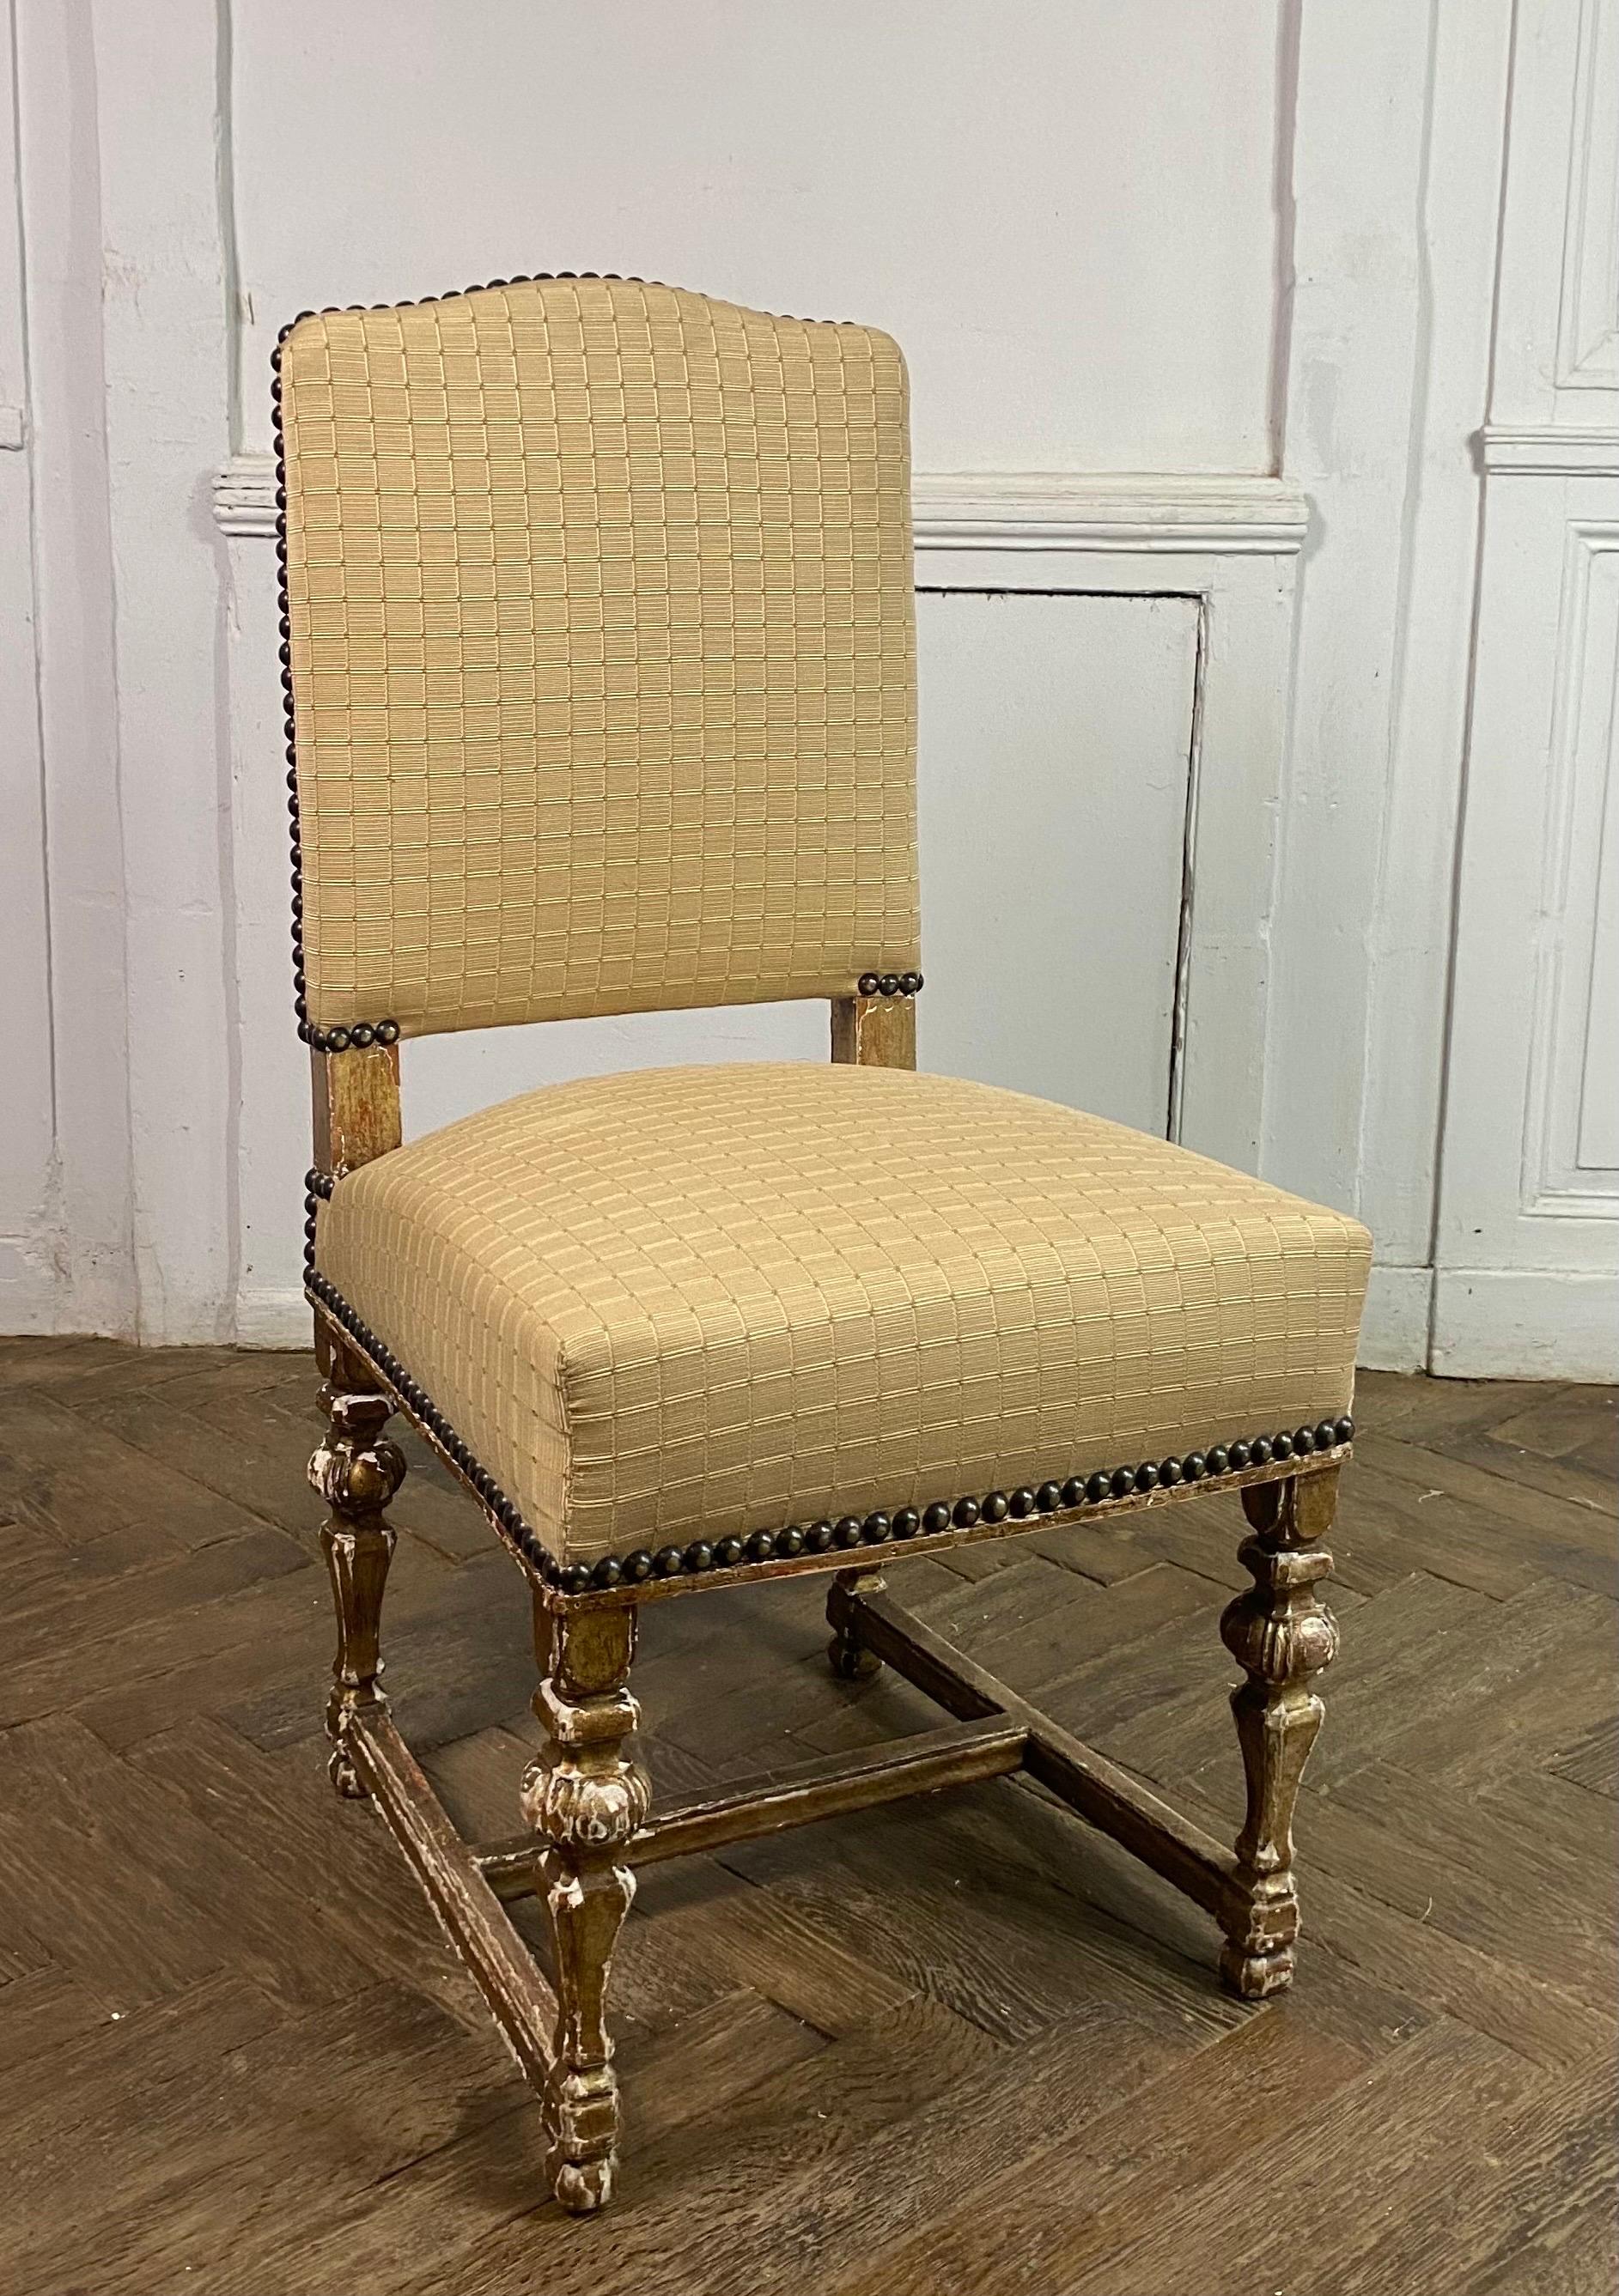 Bel ensemble de 8 chaises de style Louis XIV avec base balustre en bois doré reliée par une entretoise. L'ensemble a été retapissé dans un tissu beige de très bonne qualité avec des motifs rectangulaires. Lacunes dans la dorure, ce qui donne un très